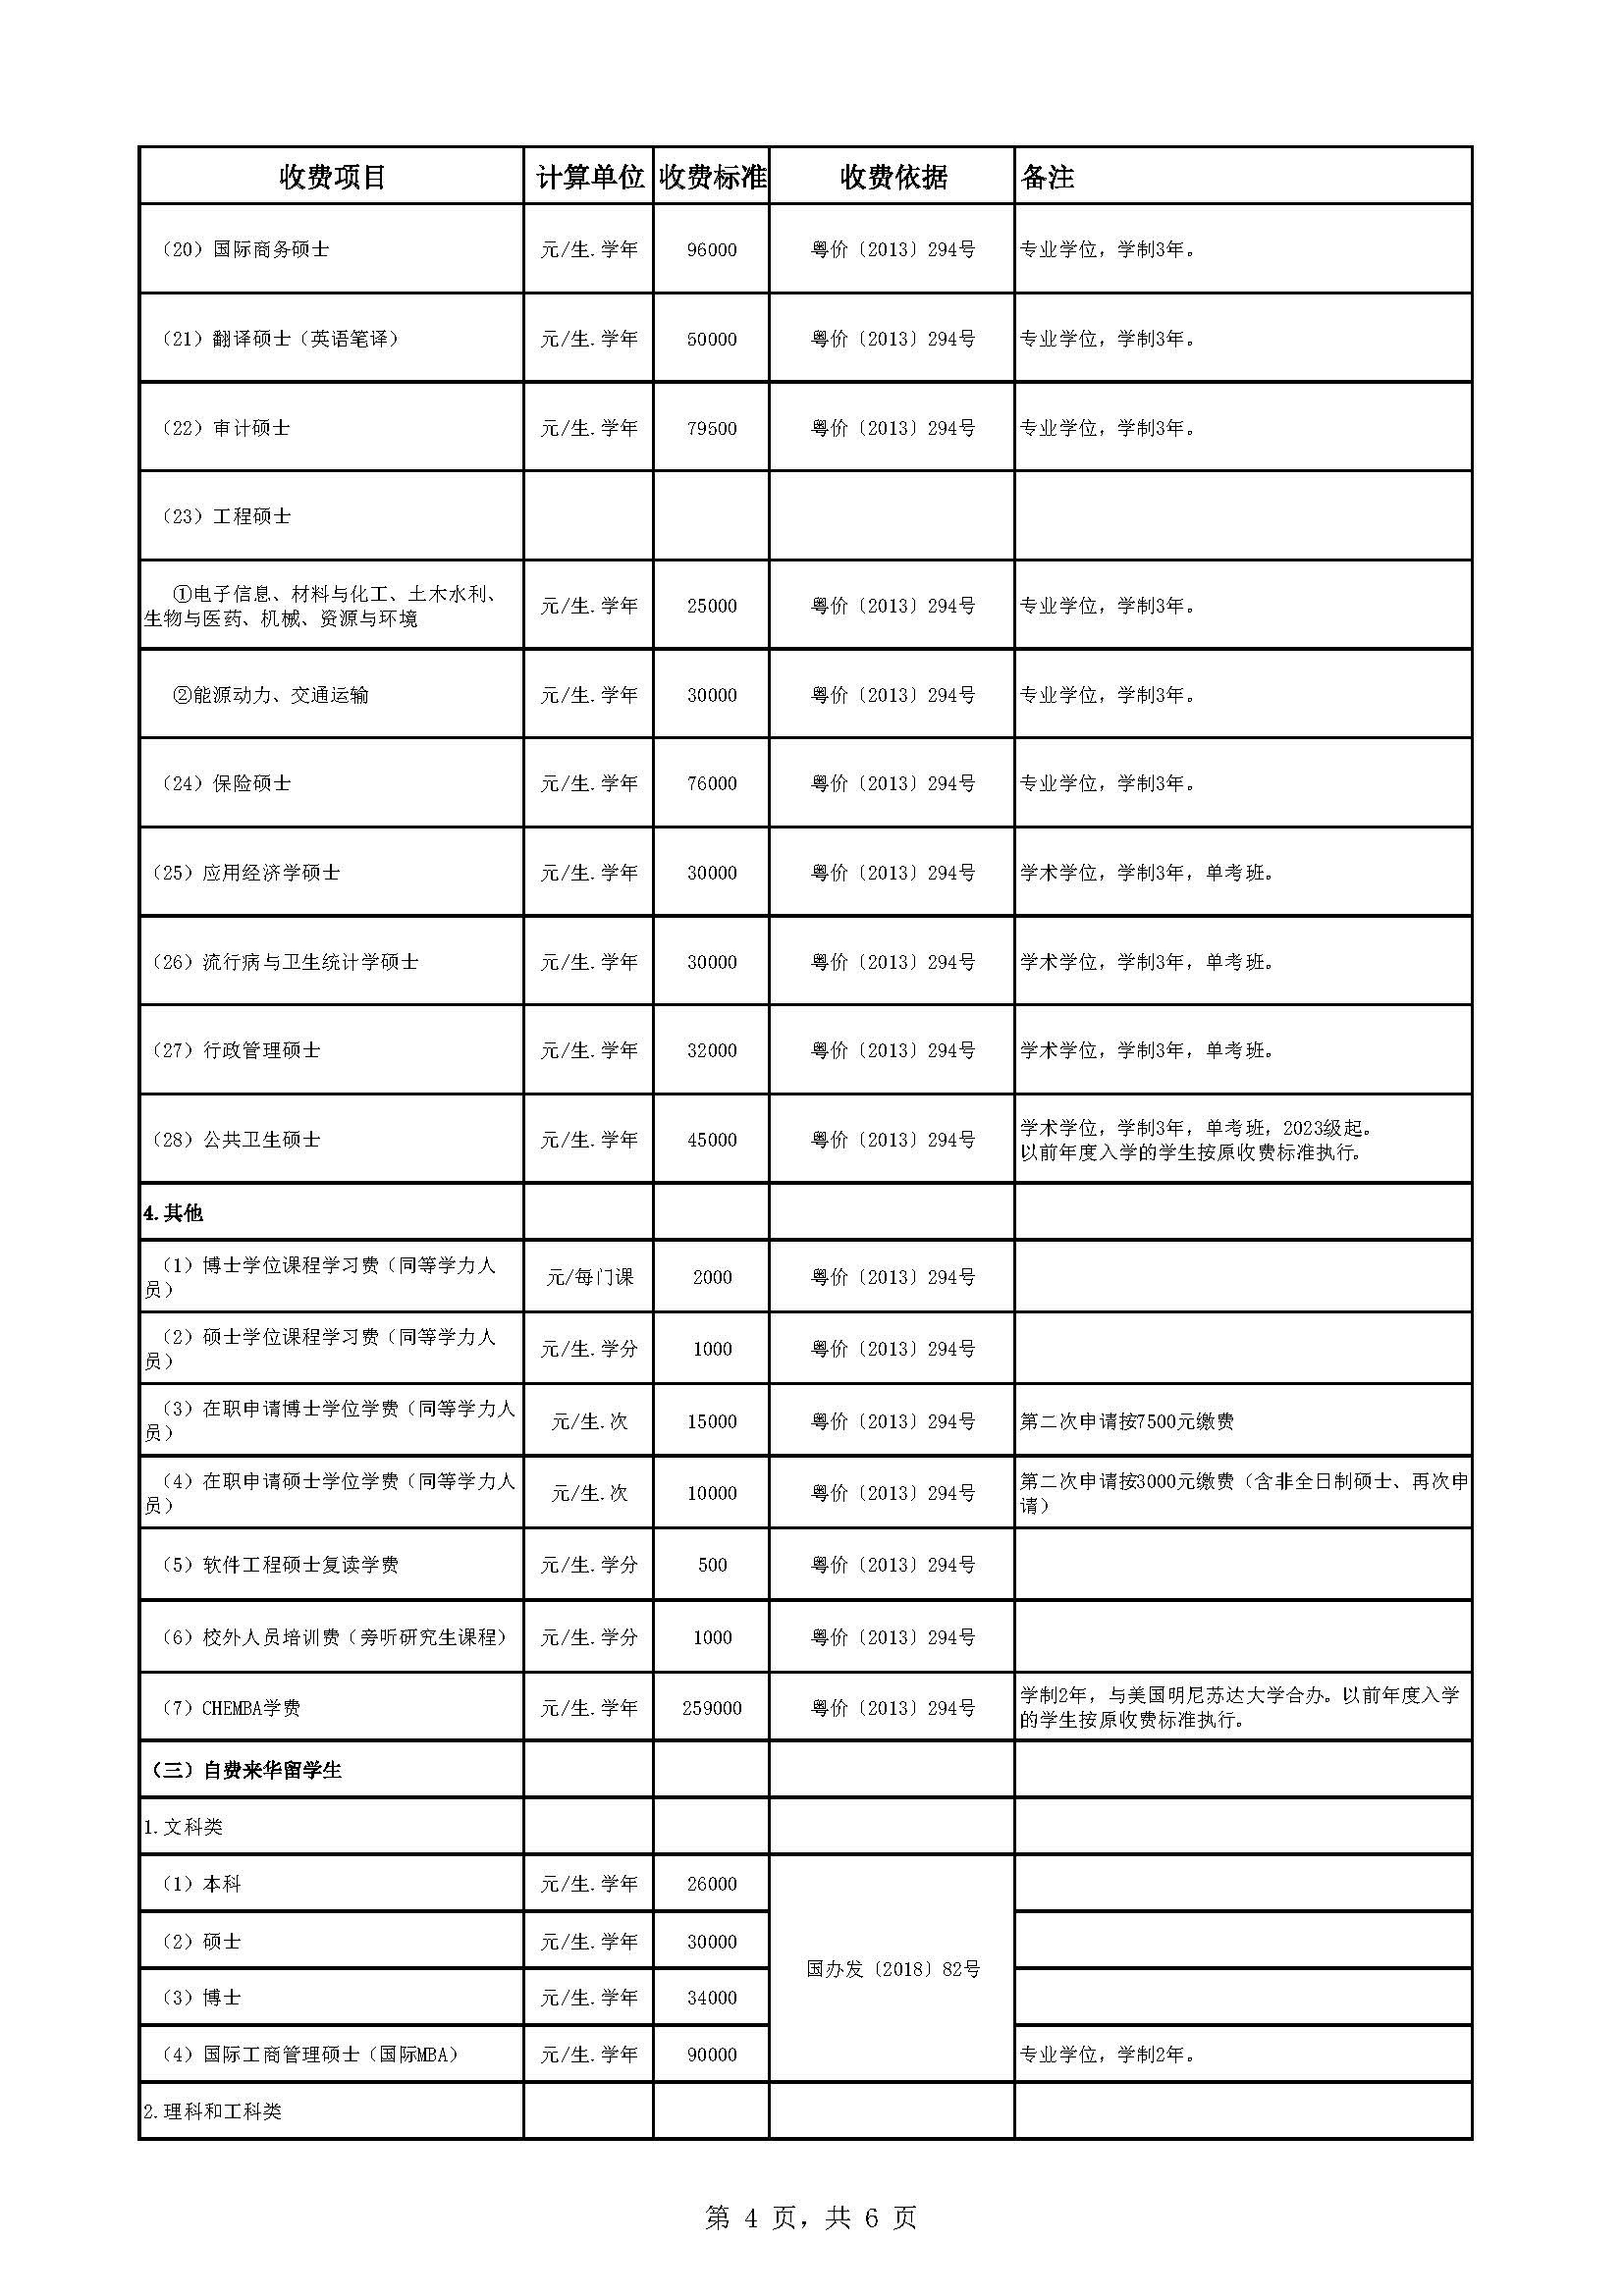 中山大学教育收费公示表（2022-2023年）_页面_4.jpg